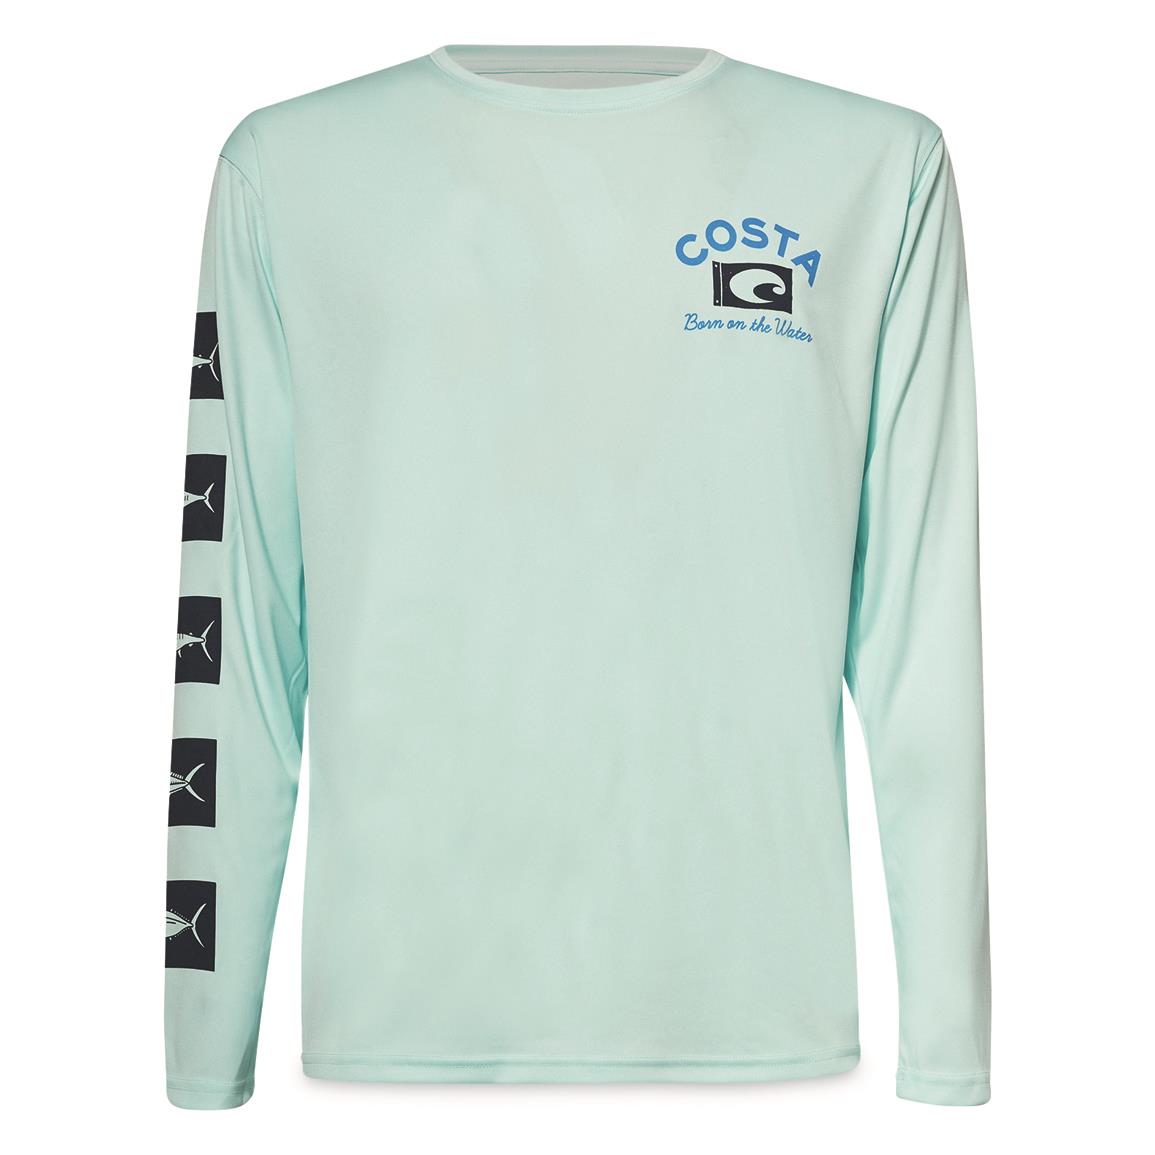 Costa Tech Banner Long-sleeved Shirt, Mint